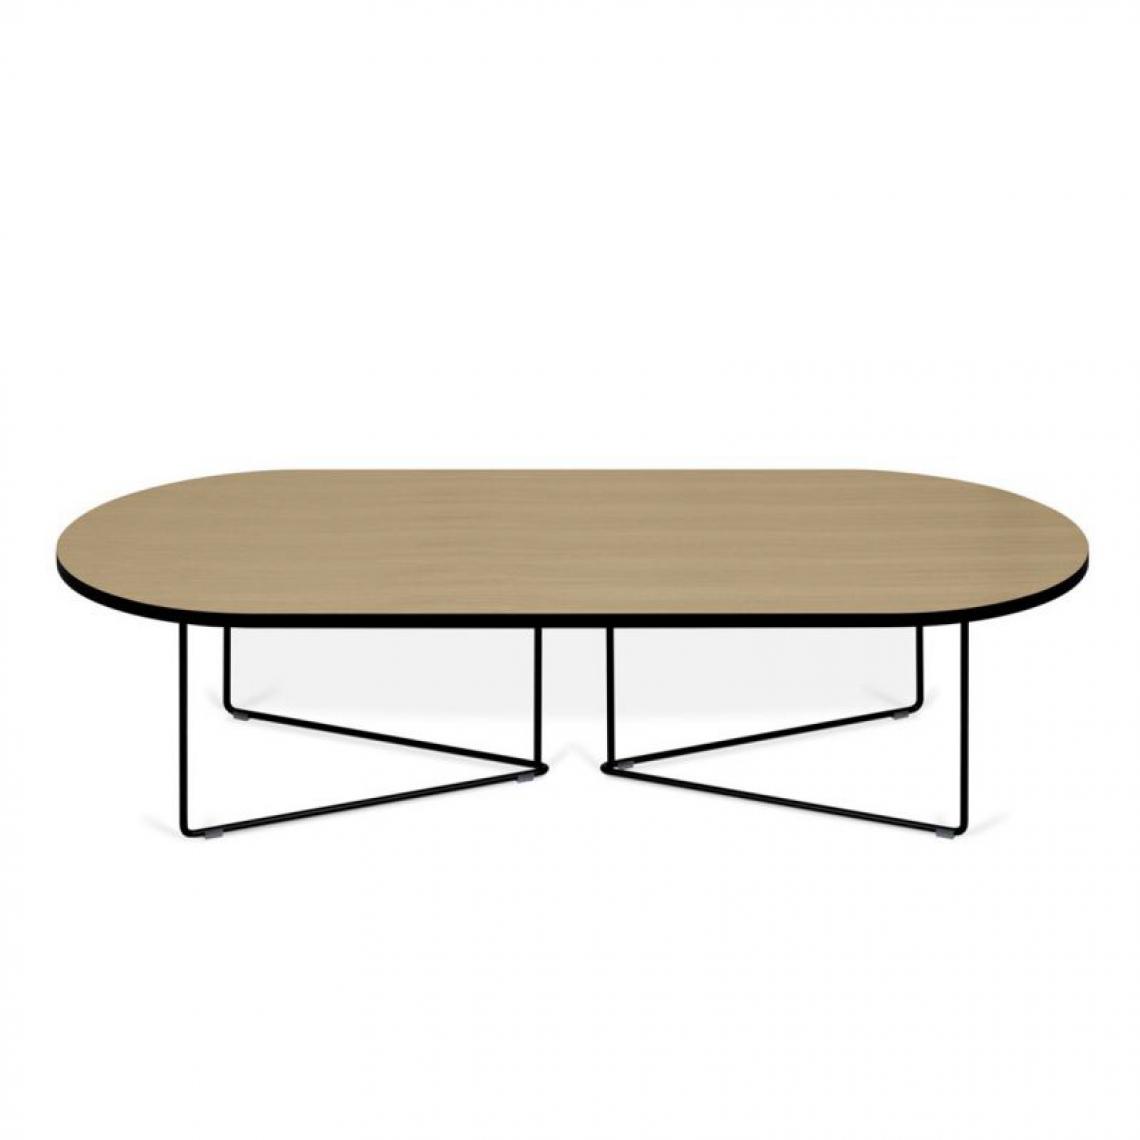 Temahome - Table basse OVAL - chêne et métal noir - Tables basses